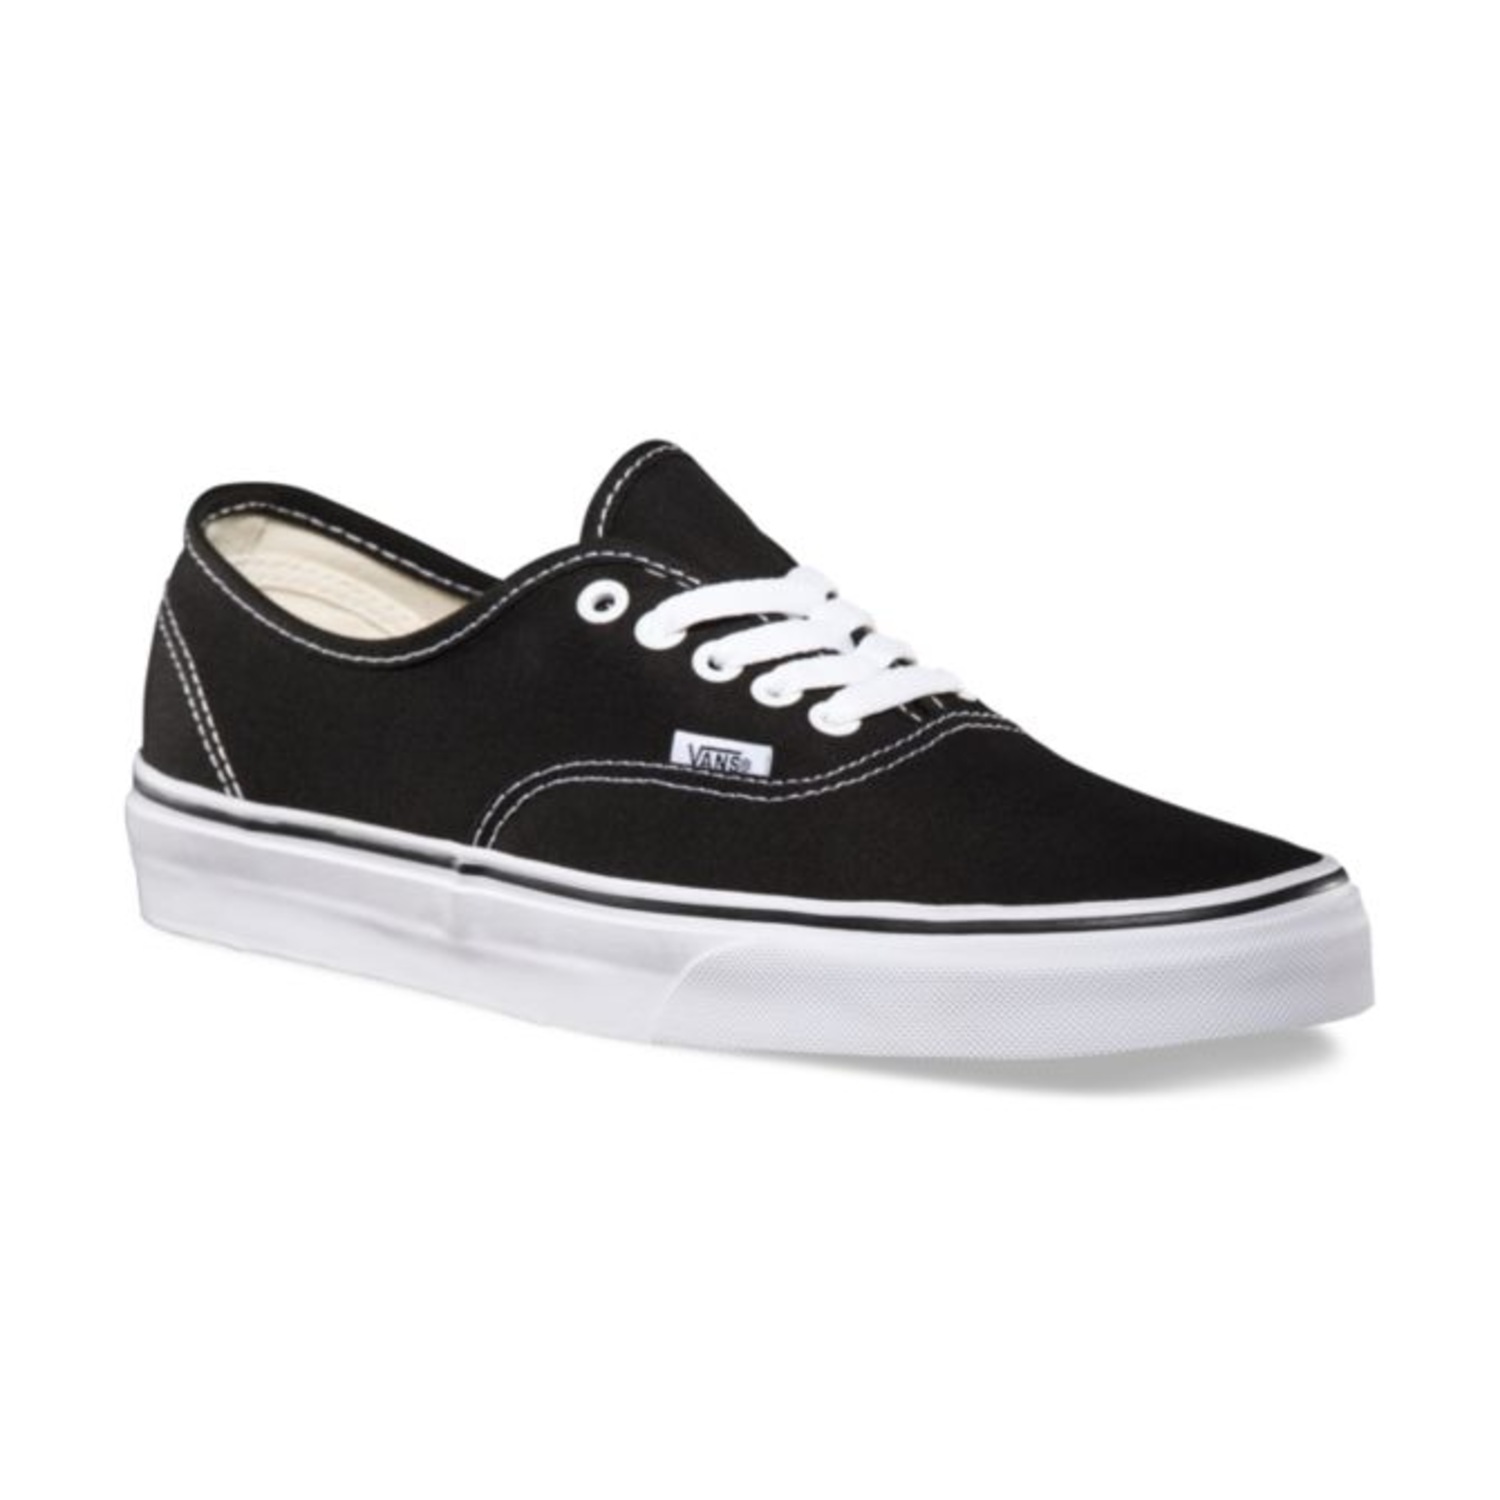 Vans Authentic (Black) Men's Skate Shoes-10, Size: Large